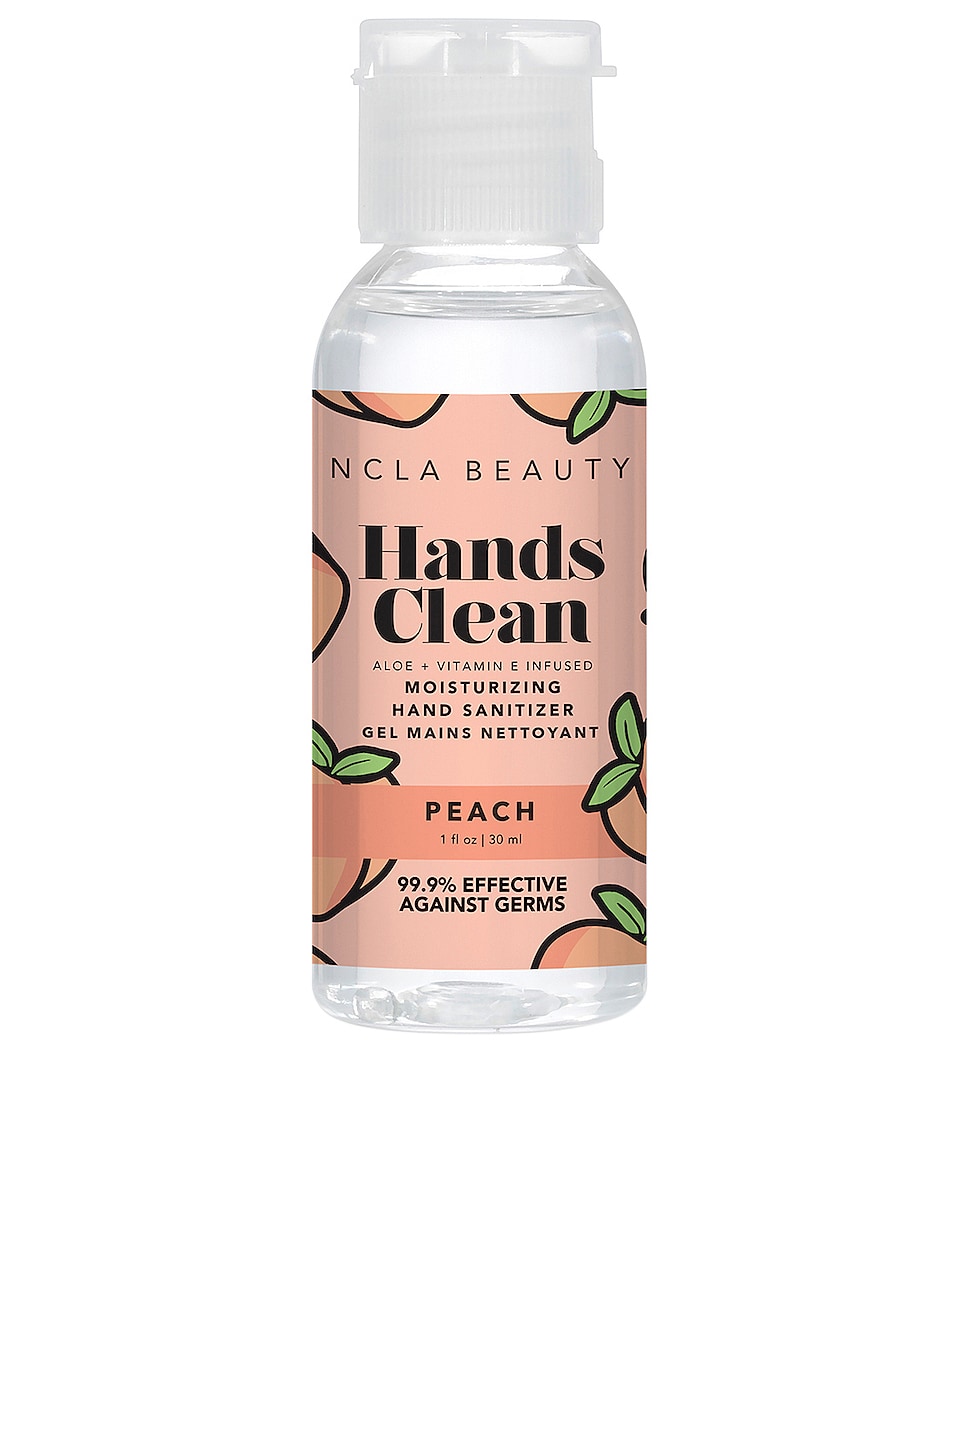 NCLA HANDS CLEAN HAND SANITIZER,NCLR-WU73